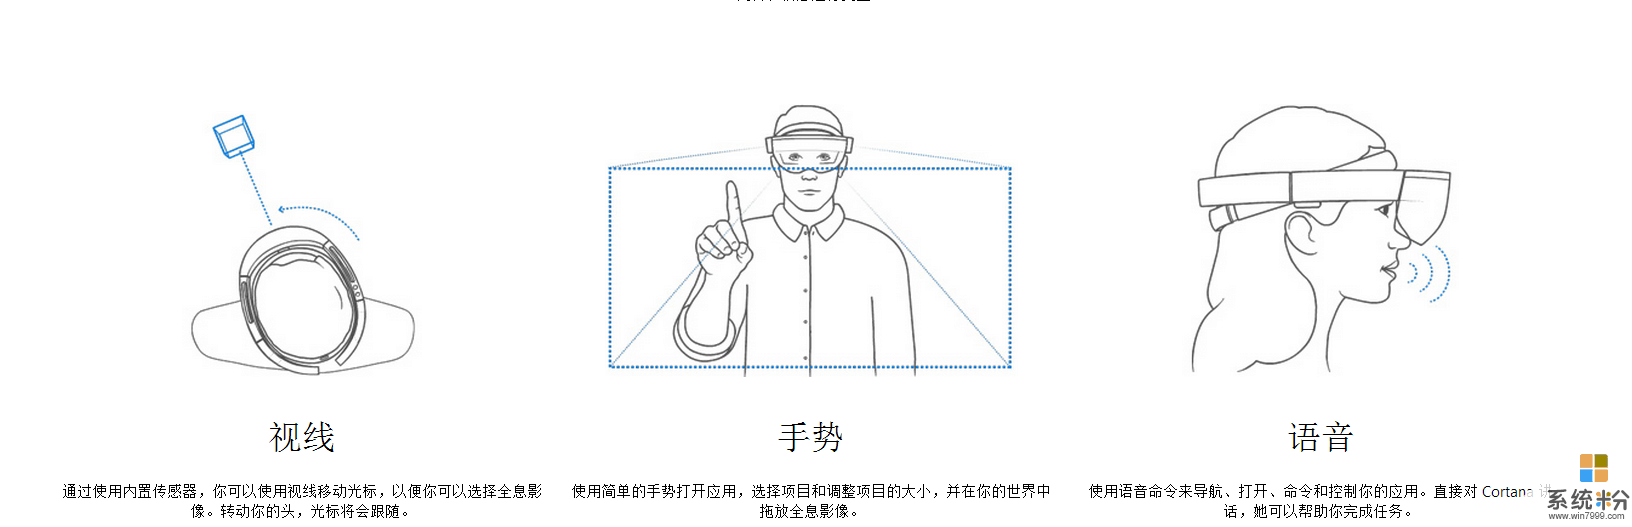 微软黑科技全息影像 HoloLens眼镜 实现混合现实